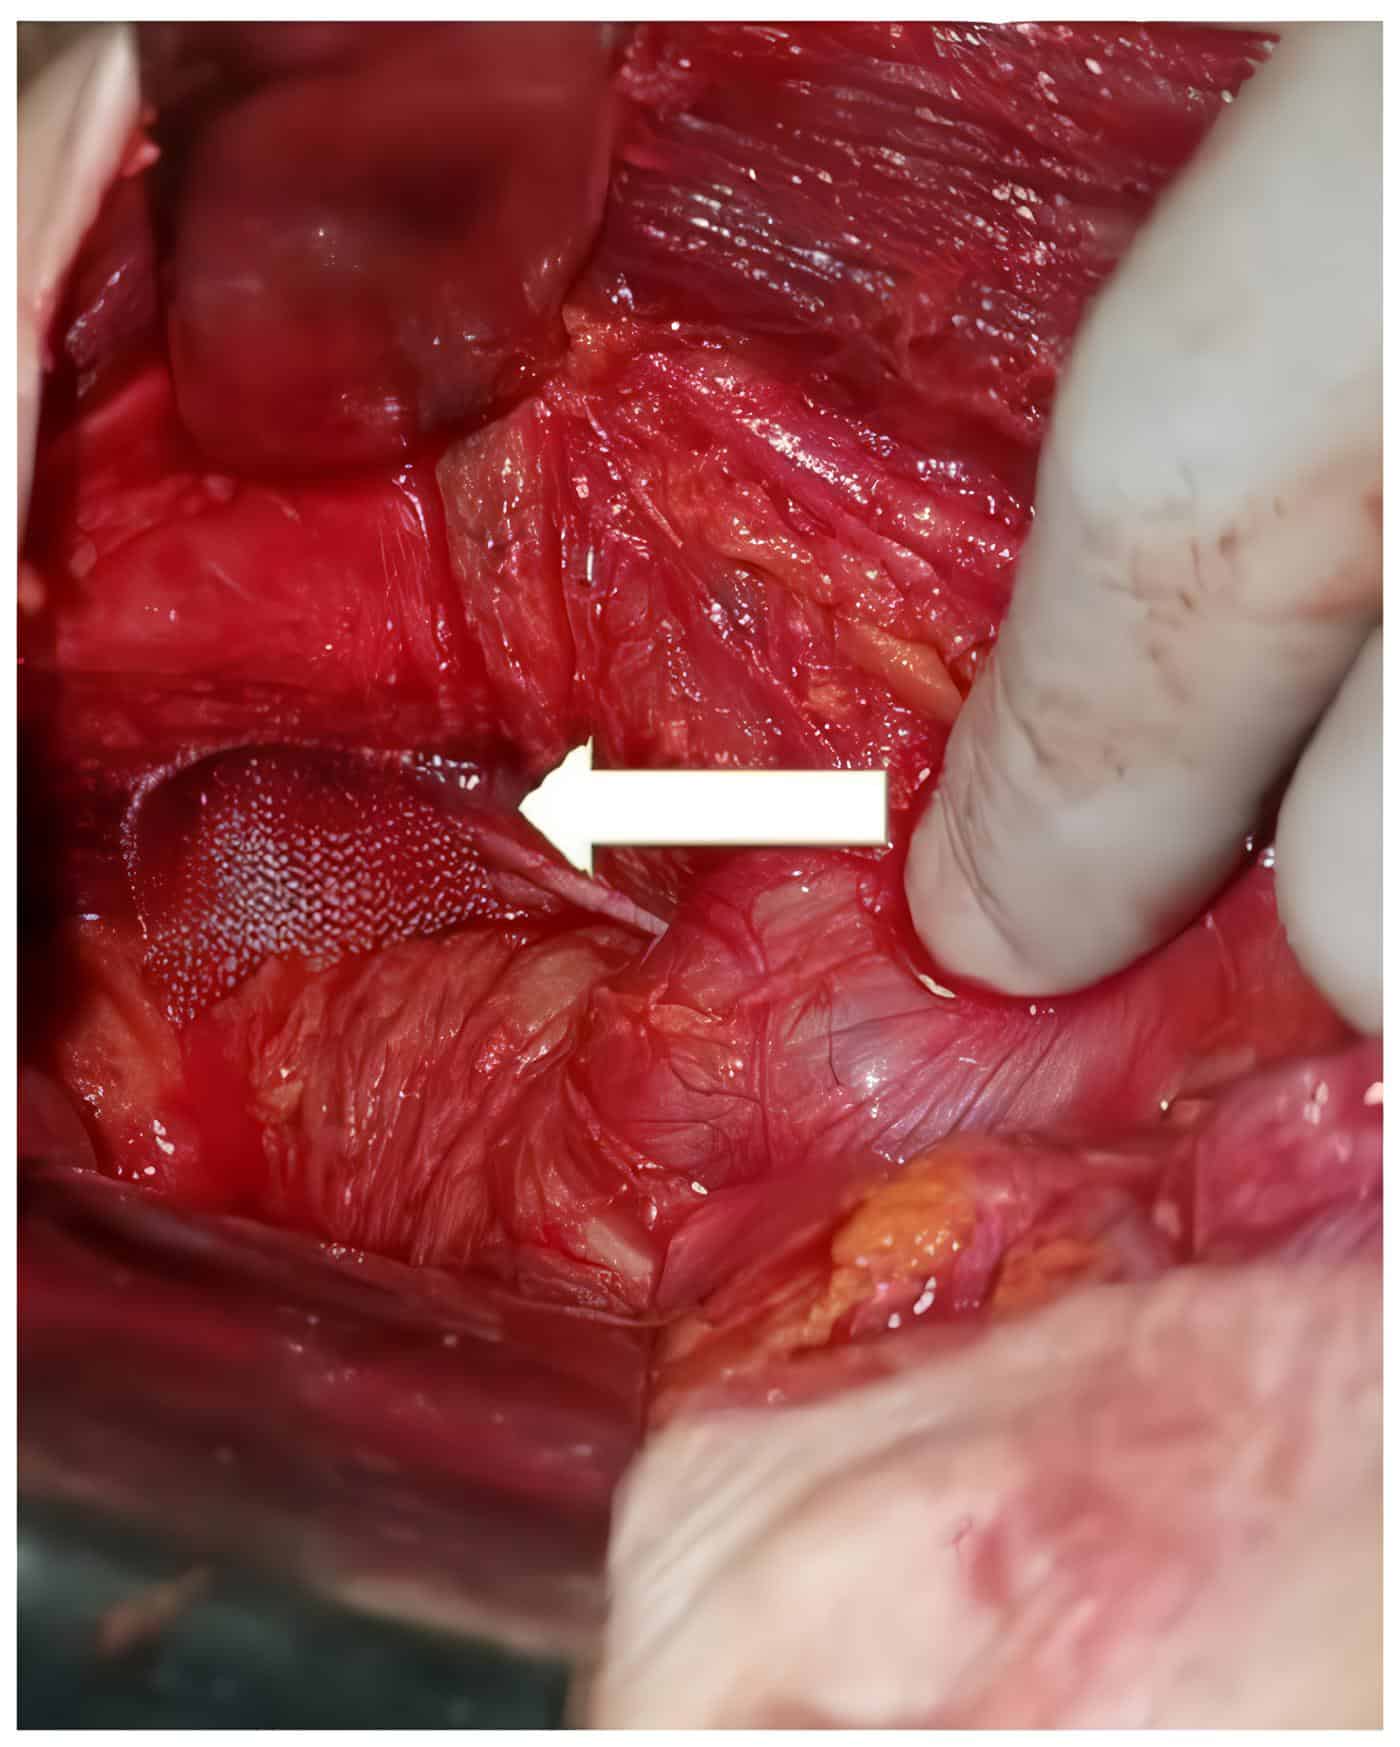 Reparación del defecto herniario, malla quirúrgica en el orificio obturador derecho